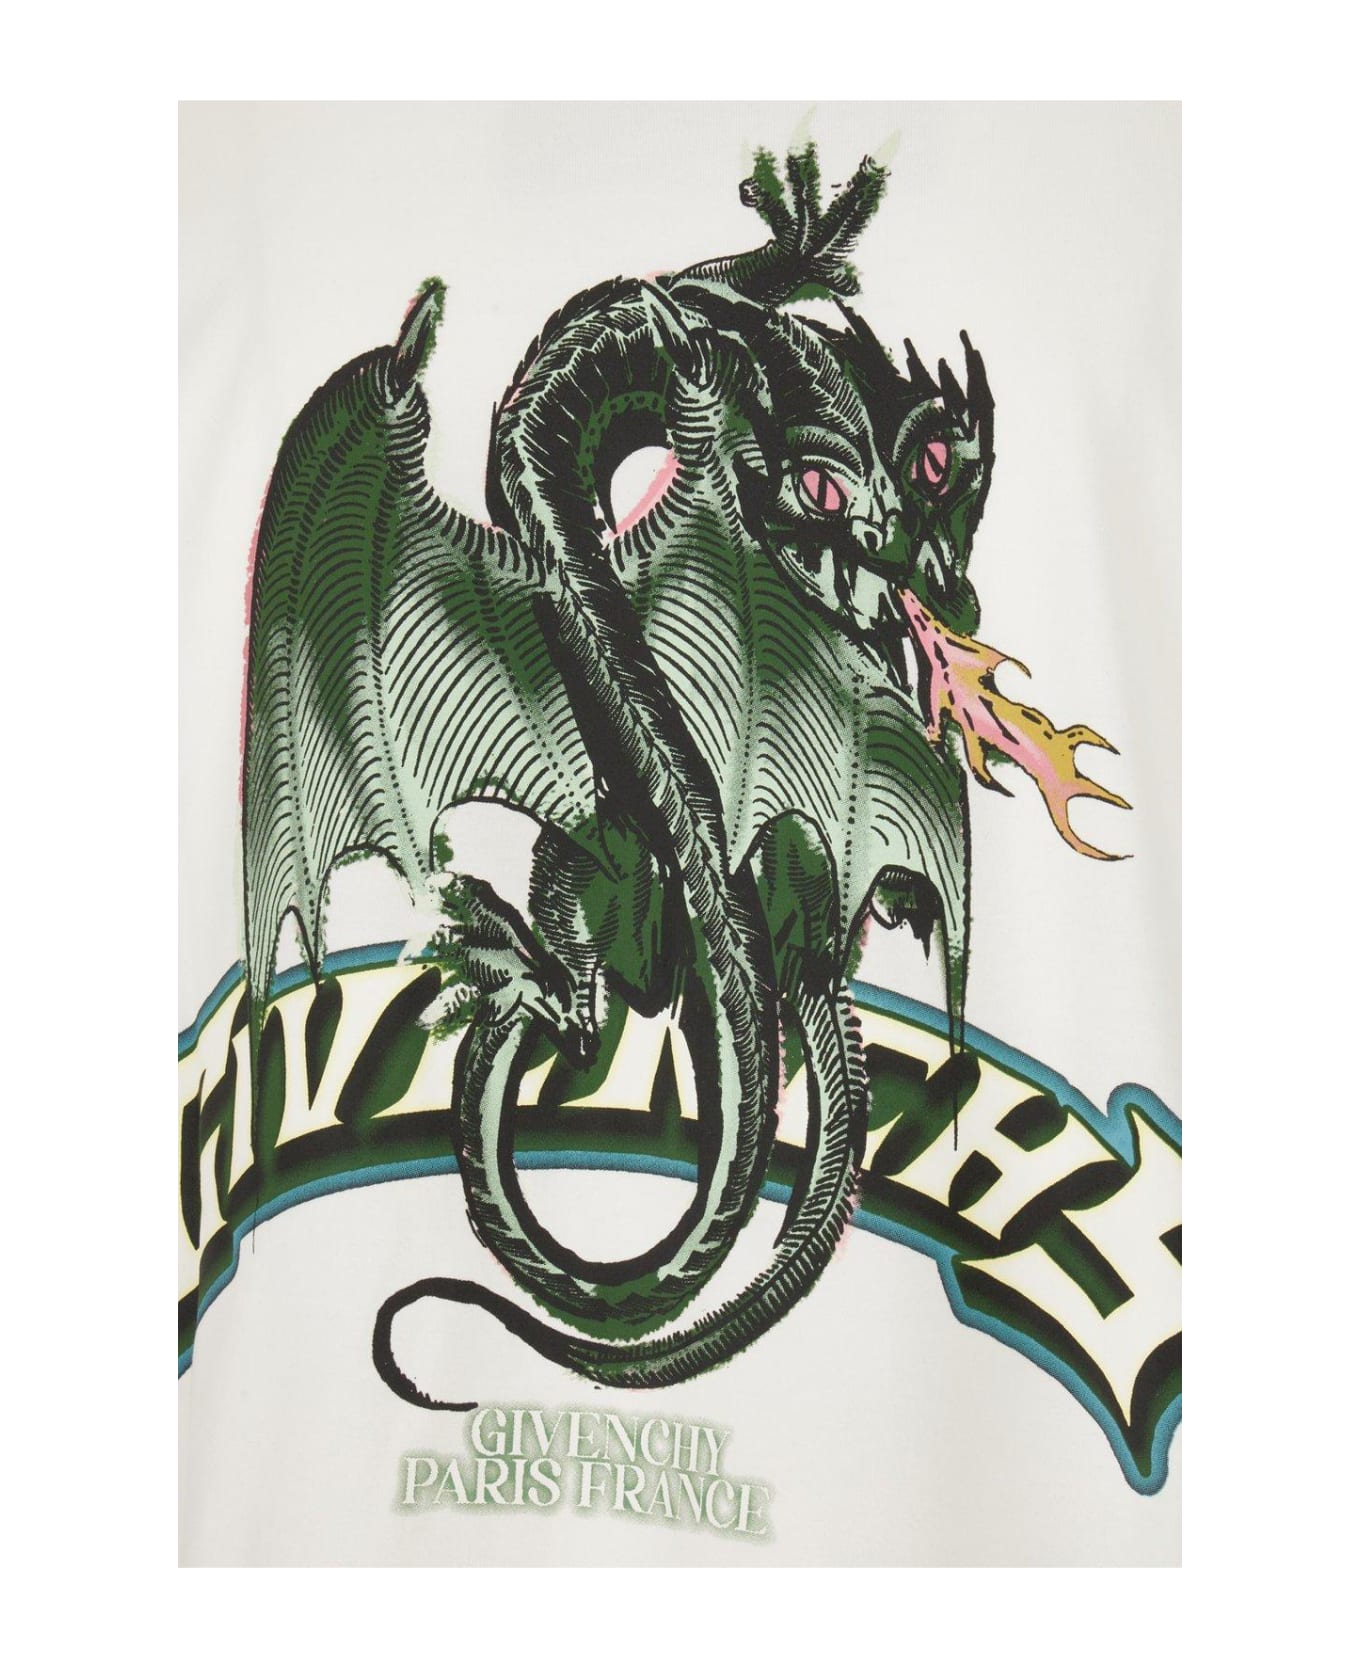 Givenchy Dragon Printed Crewneck T-shirt - Black シャツ